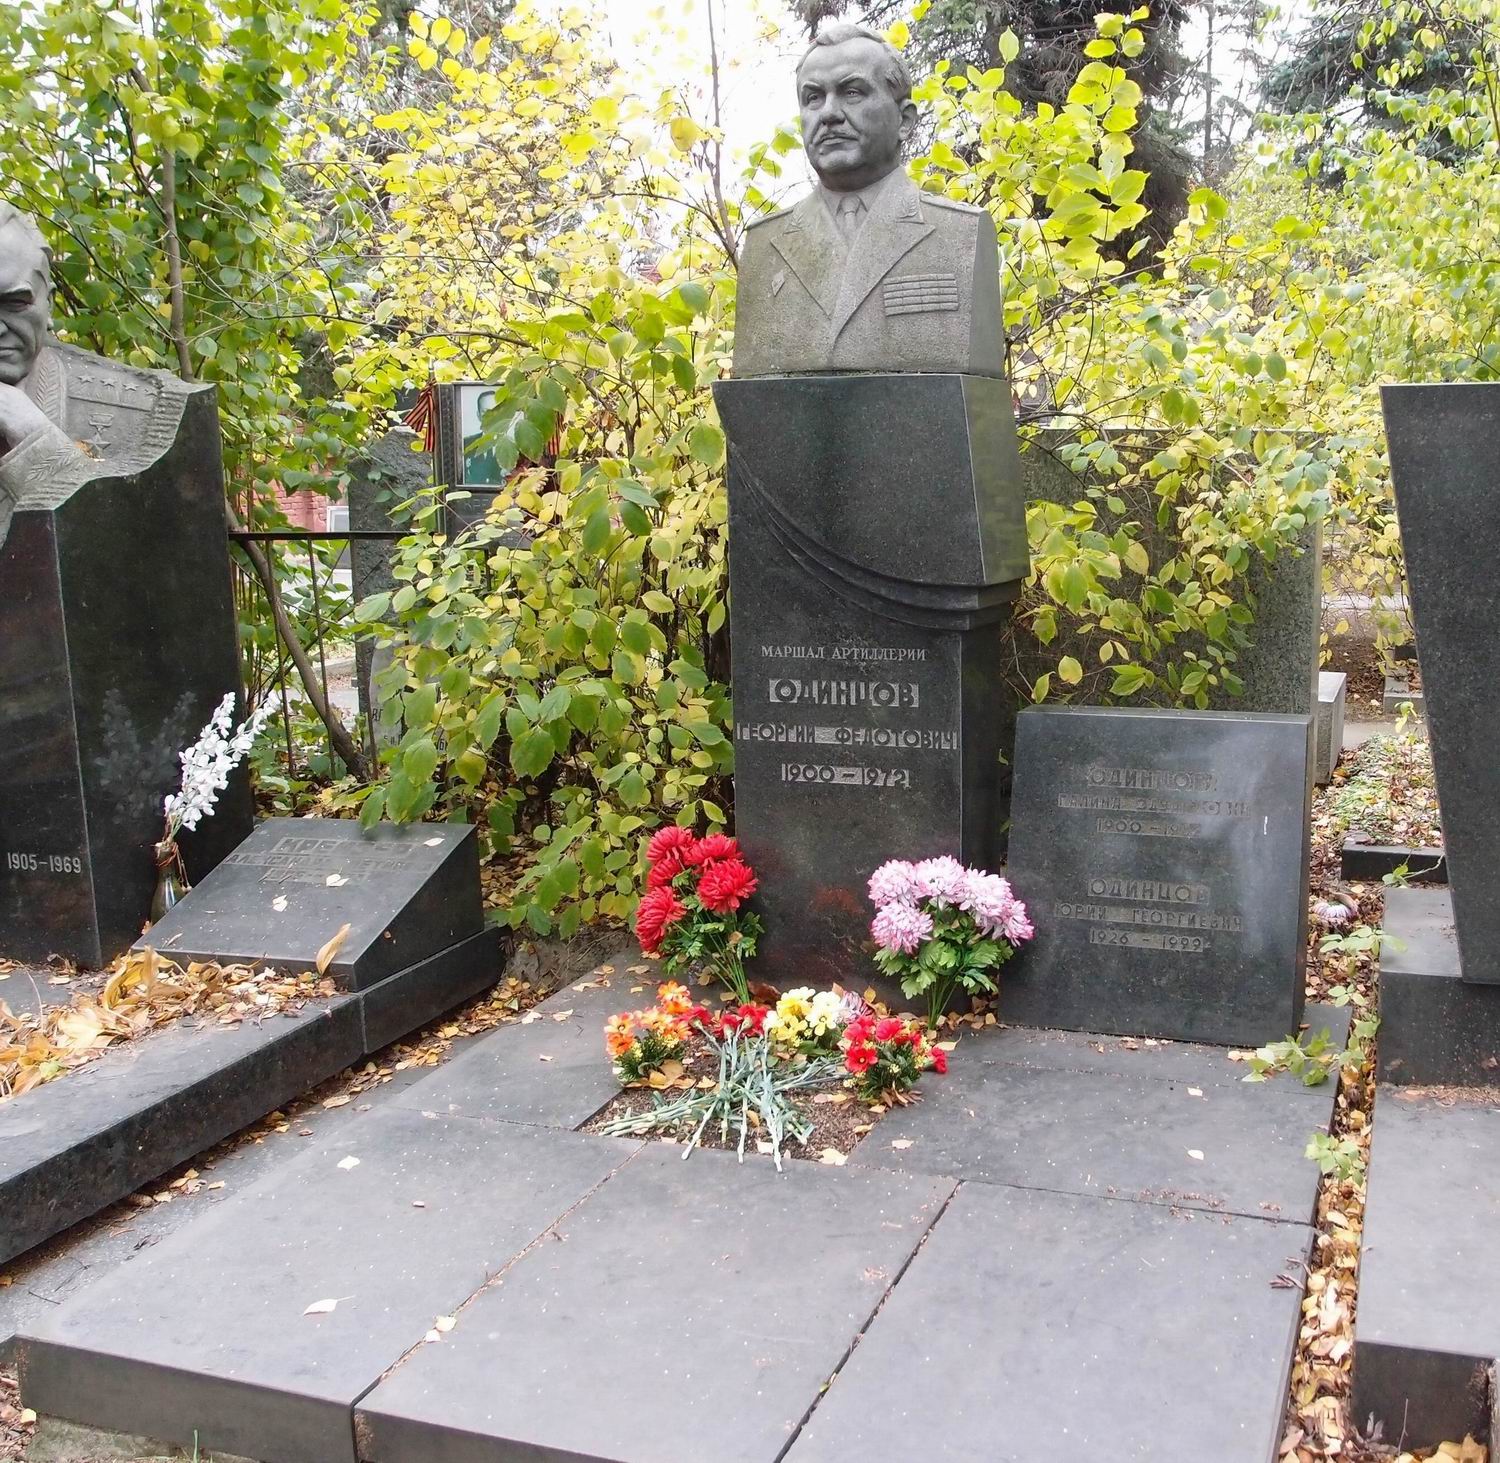 Памятник на могиле Одинцова Г.Ф. (1900-1972), на Новодевичьем кладбище (7-10-4). Нажмите левую кнопку мыши чтобы увидеть фрагмент памятника.